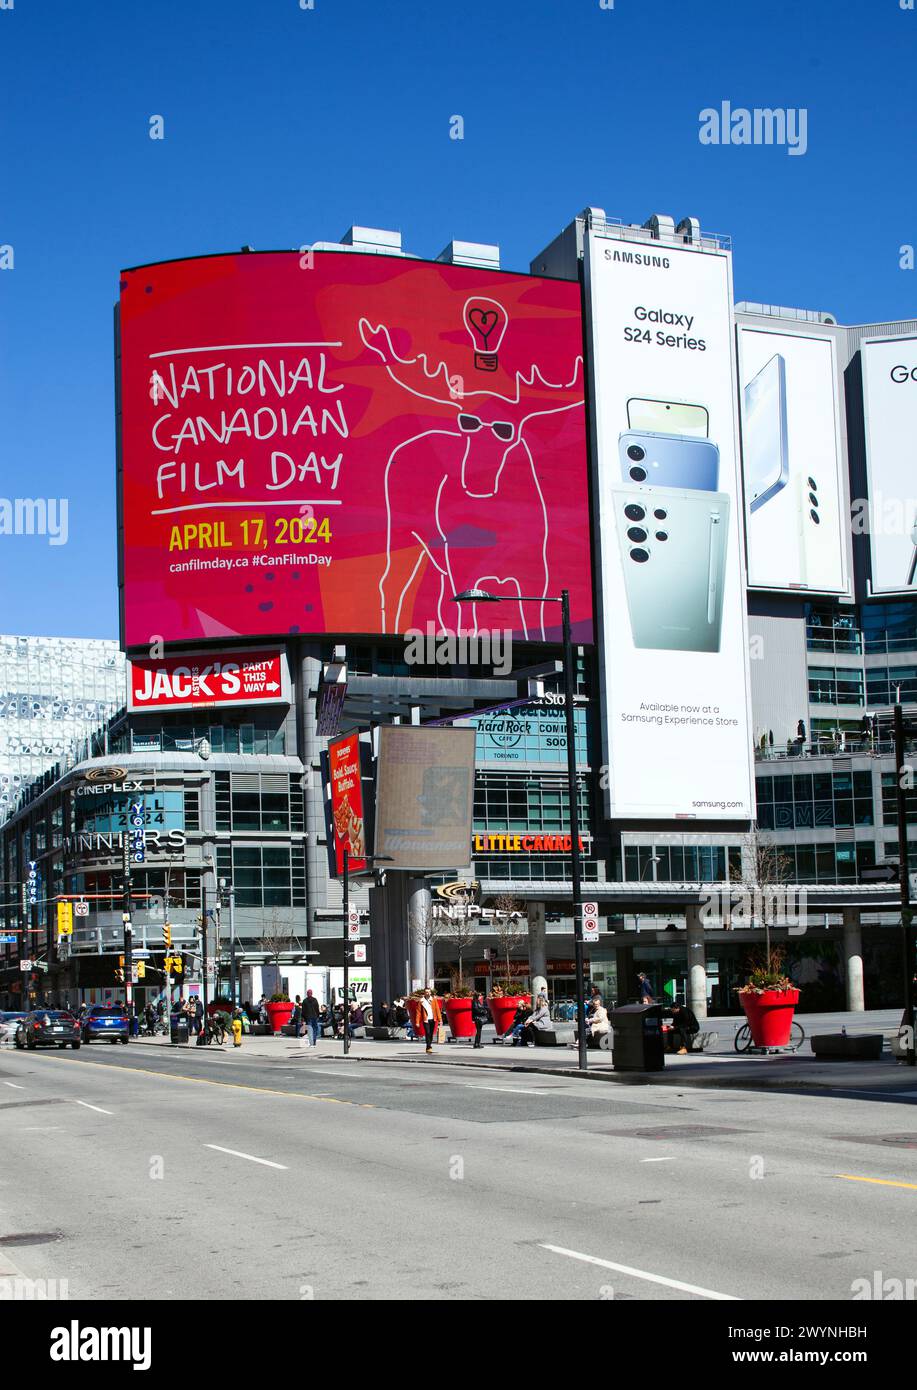 Publicité pour la Journée nationale du film canadien sur un panneau d'affichage électronique. Rue Yonge et place Dundas au centre-ville de Toronto, Canada Banque D'Images